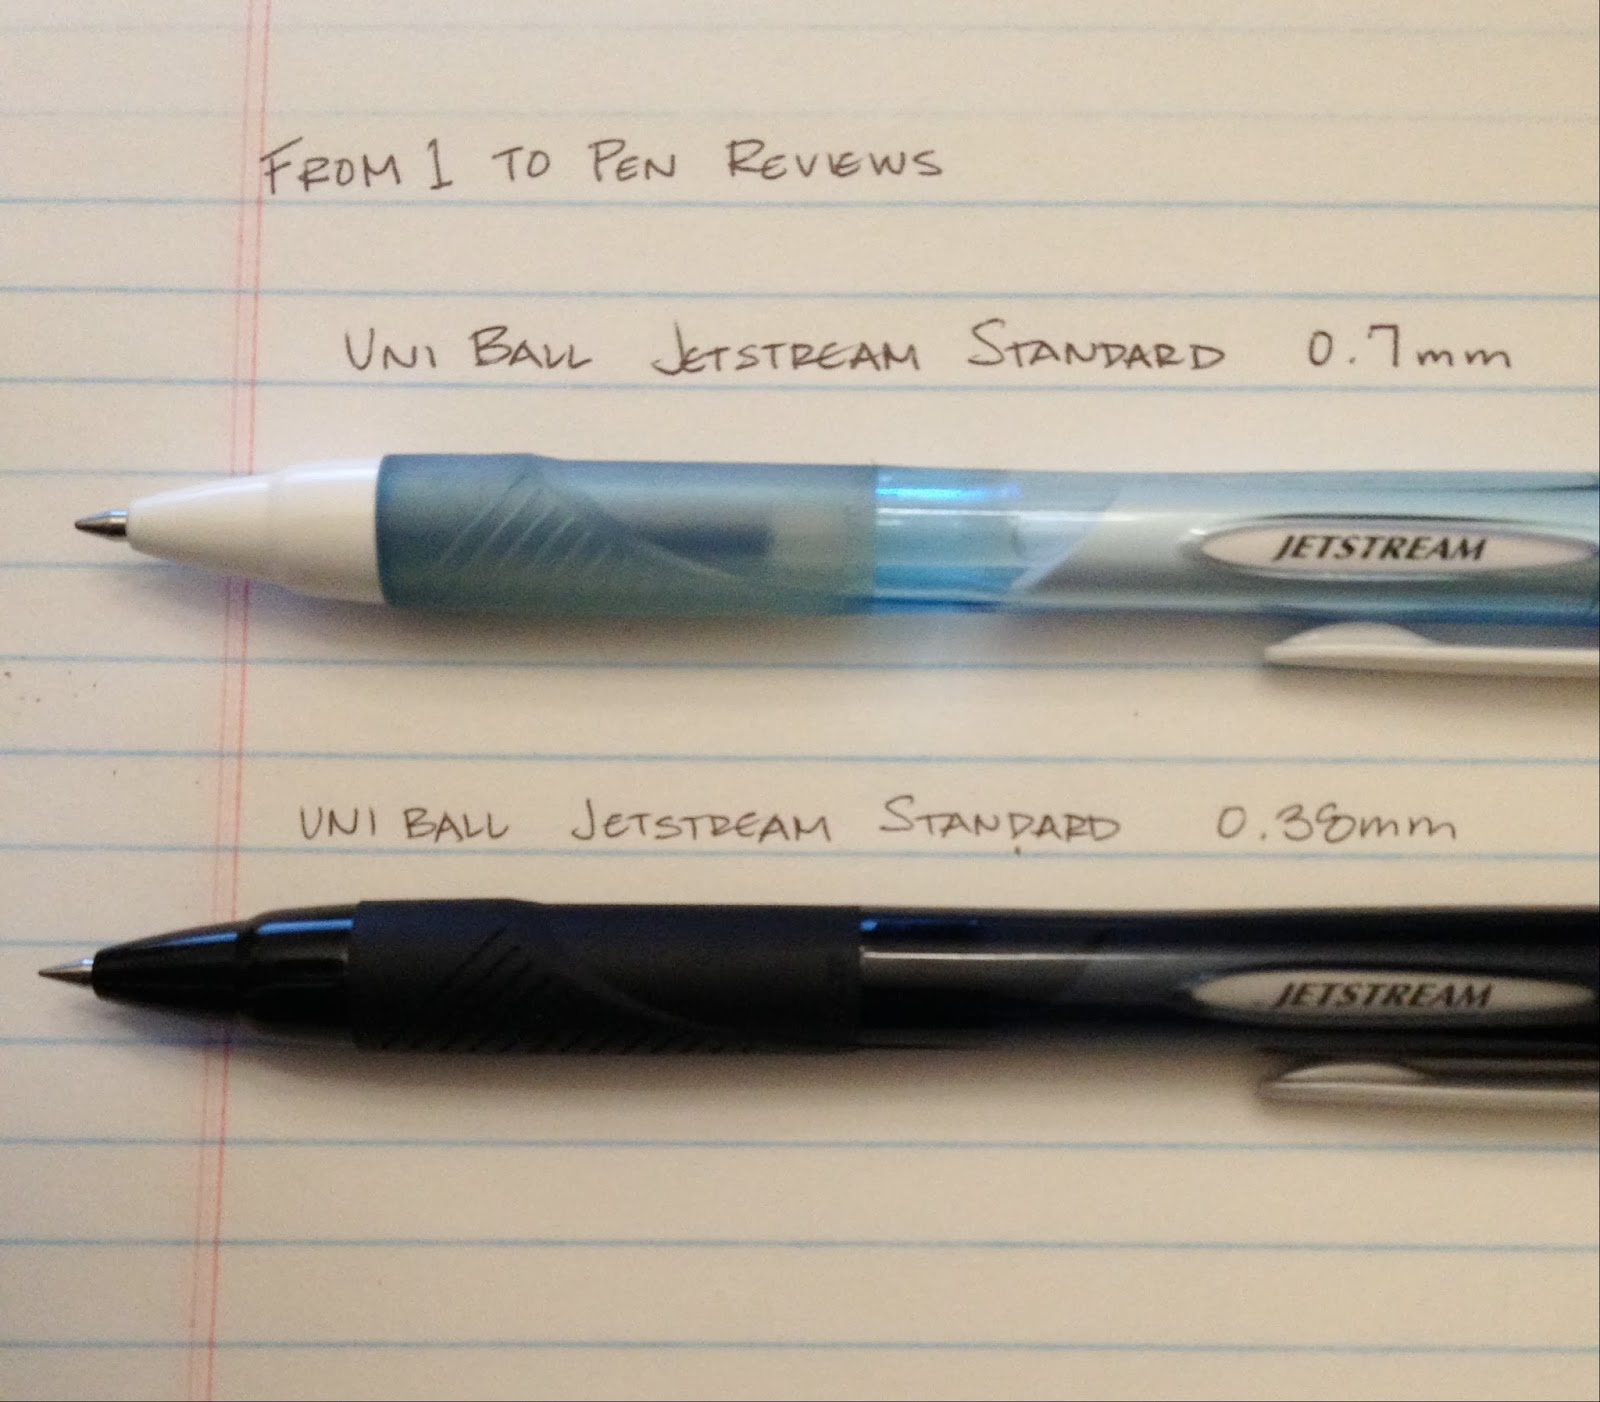 Pilot Super Grip F Retractable Ballpoint Pen 0.7mm / Pack — A Lot Mall